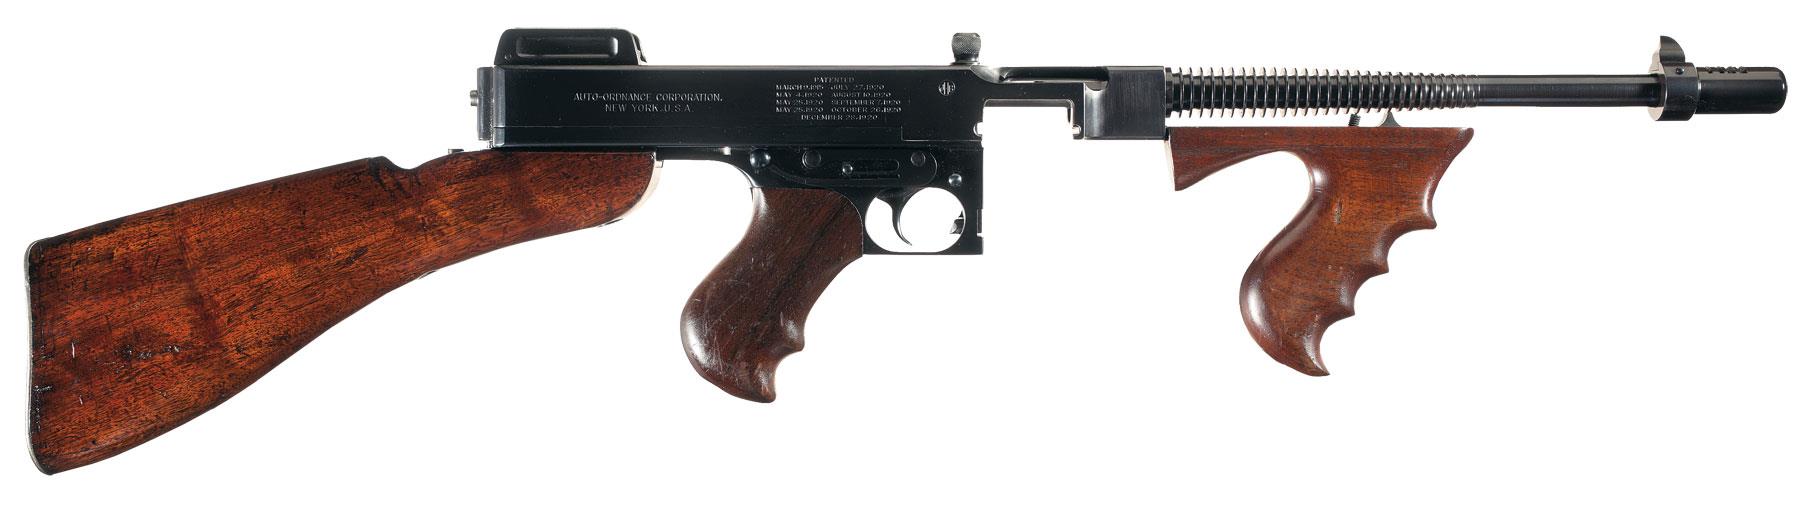 Colt 1921/28 Thompson Machine gun 45 ACP | Rock Island Auction